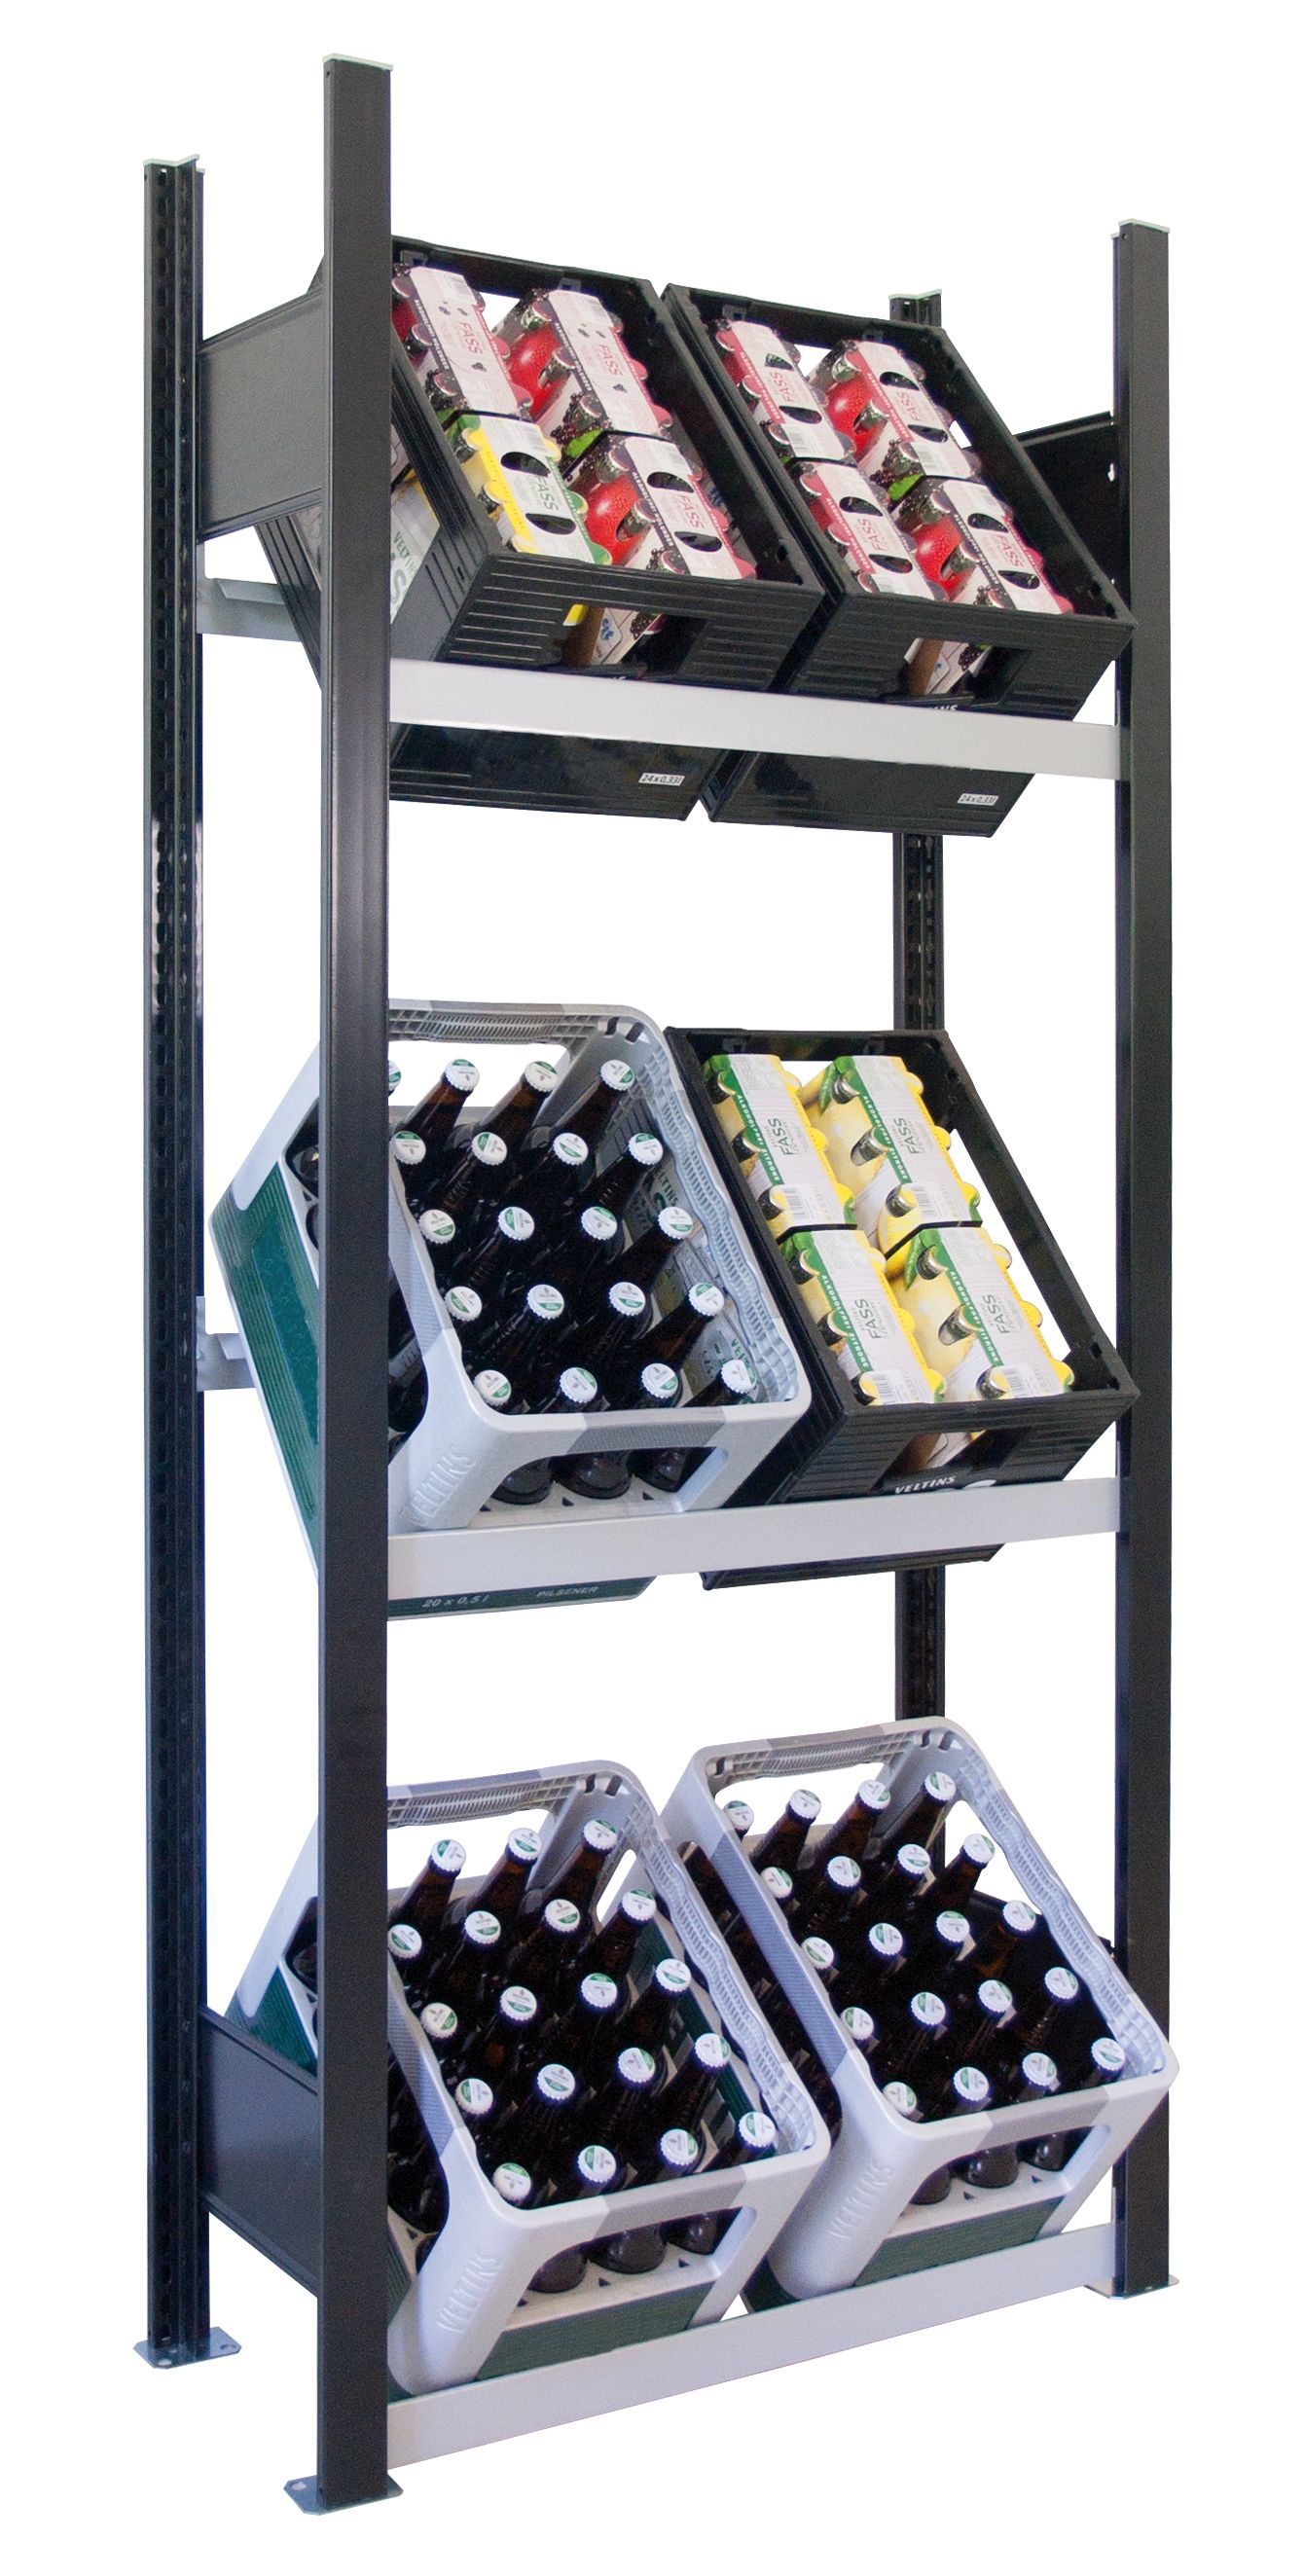 Getränkekistenregal für bis zu 6 Kisten, 180x81x30 cm (HxBxT), Traglast pro Ebene 60 Kg, schwarz-silber